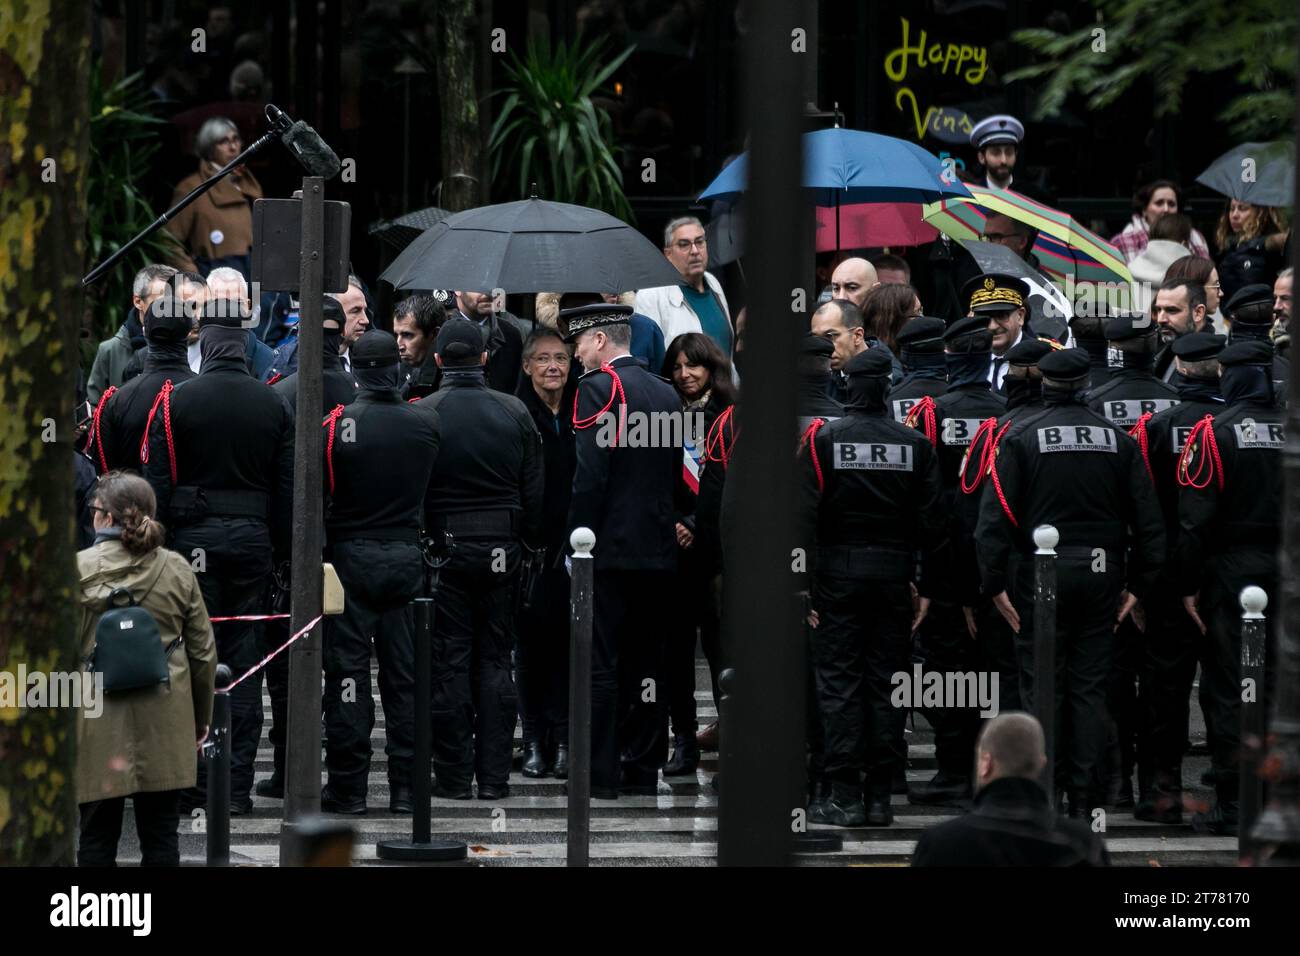 13 novembre 2023, le Bataclan, Paris, France. Cérémonie en hommage aux victimes des attentats terroristes du 13 novembre 2015. Banque D'Images